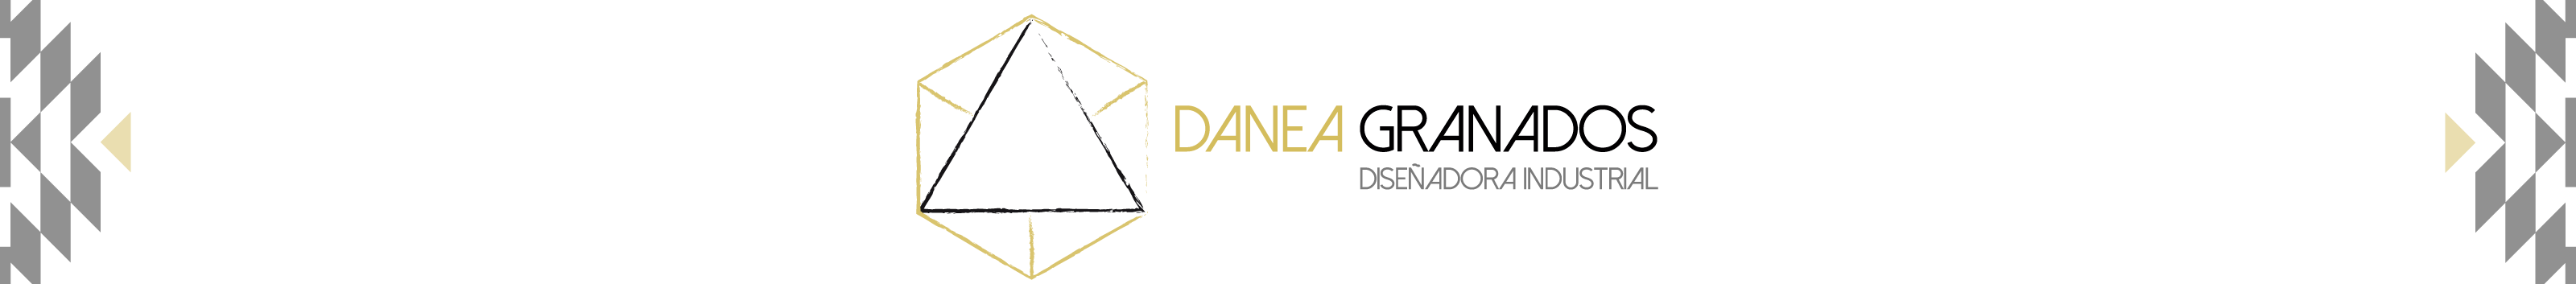 Circe Danea Granados Briones's profile banner